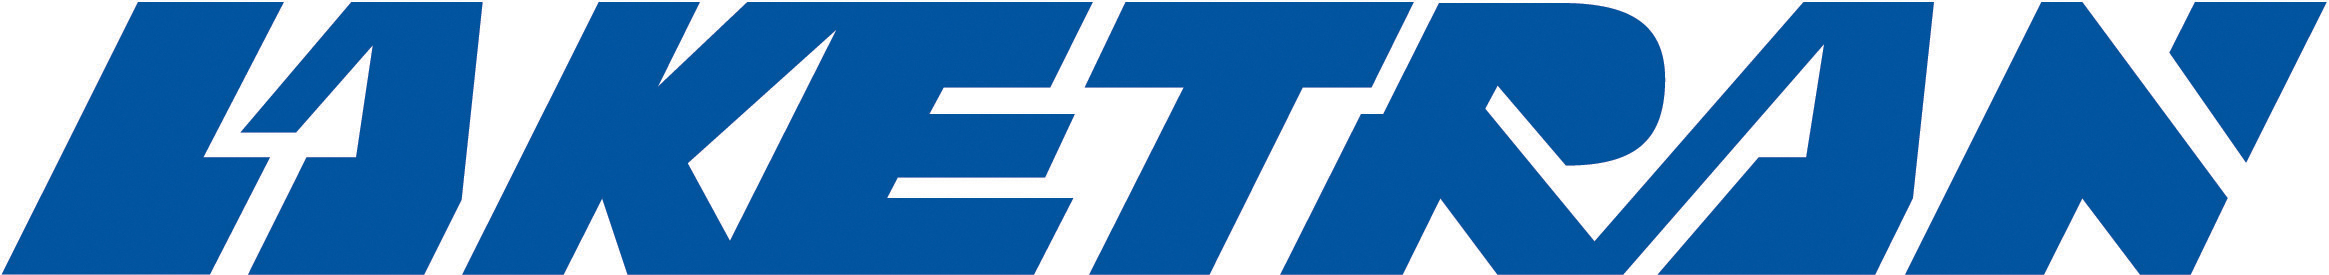 Laketran logo 1